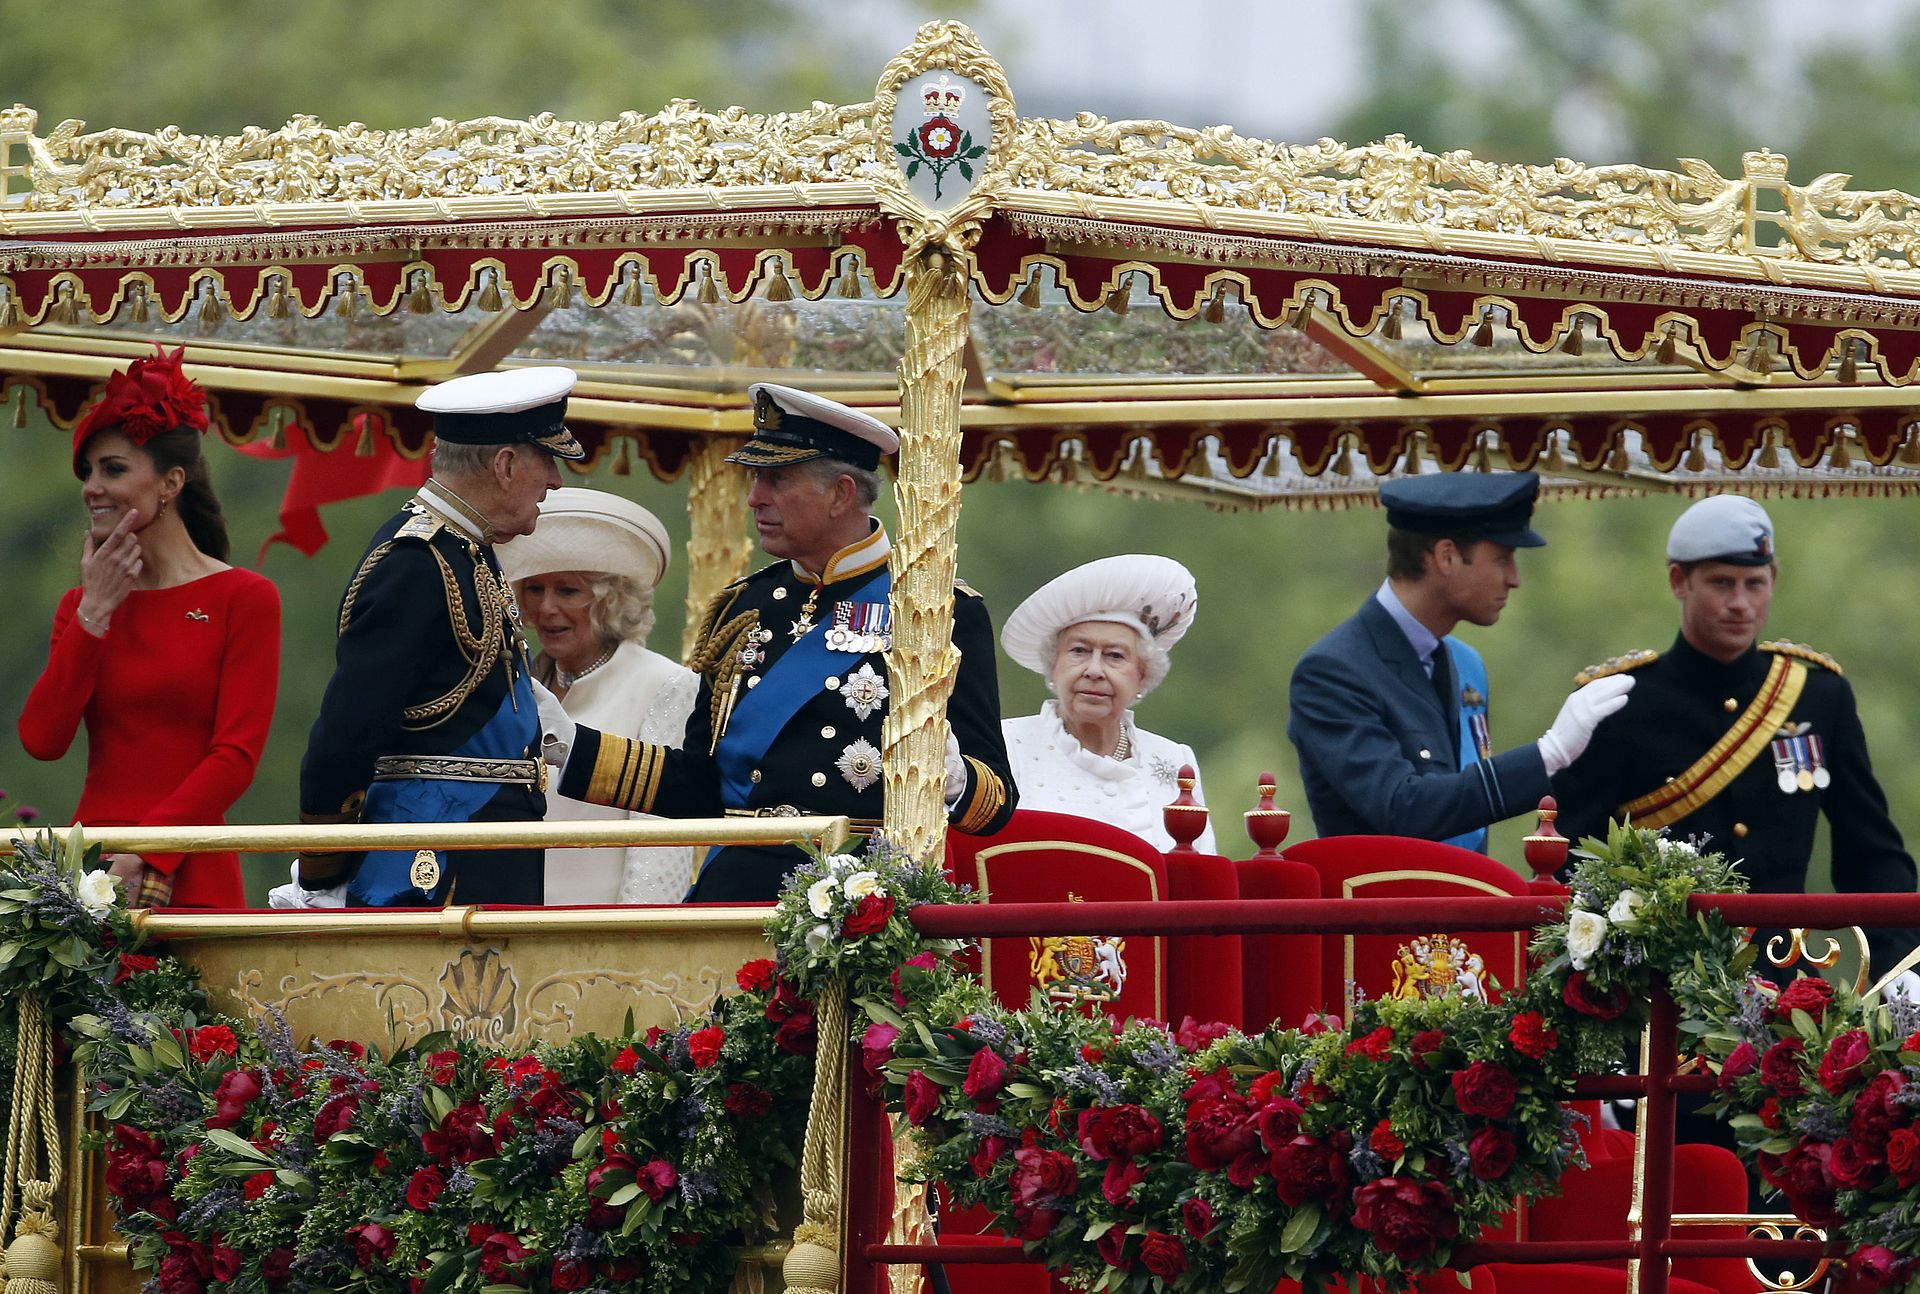 Leden van de koninklijke familie tijdens de rondvaarttocht over de Thames in 2012, tijdens de